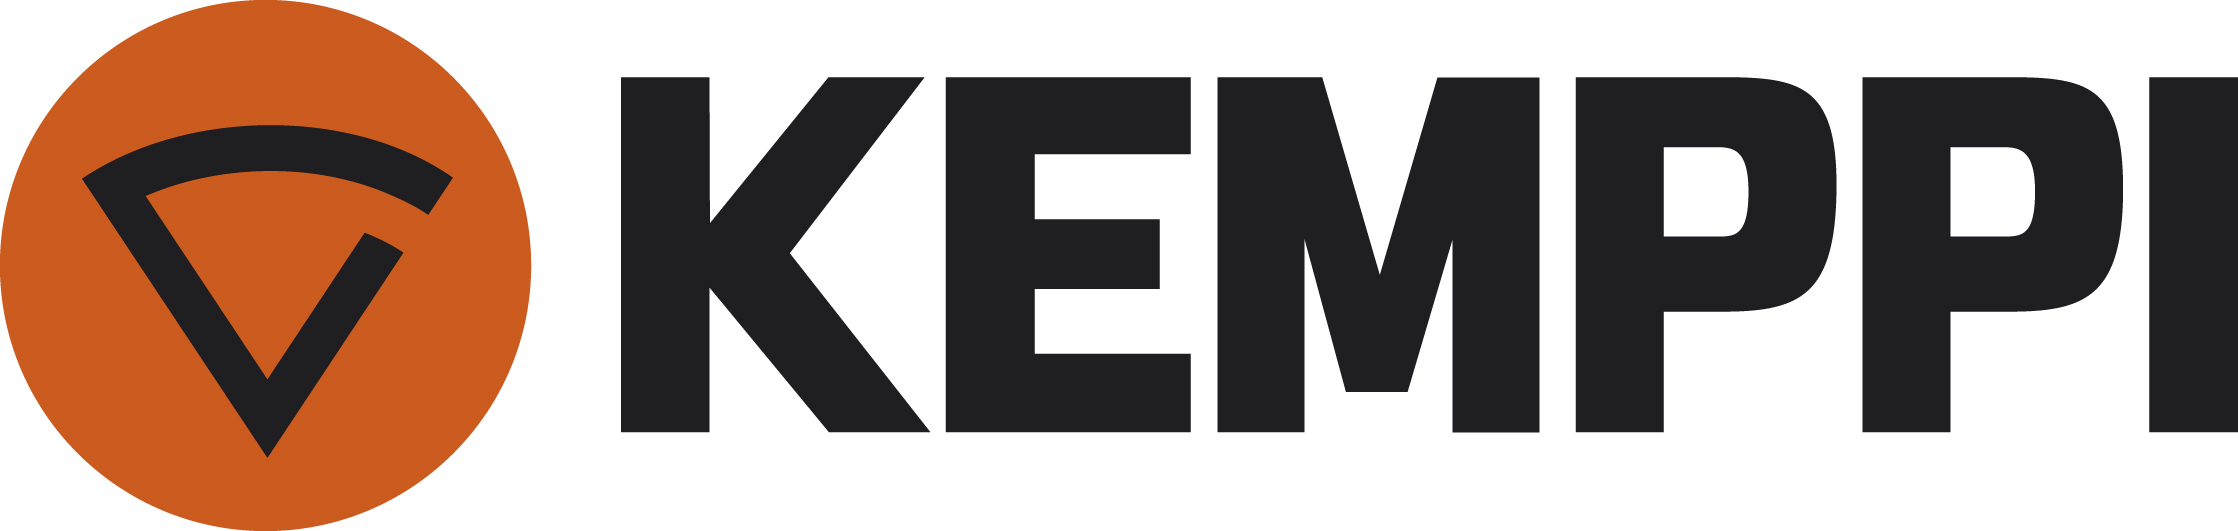 
			Kemppi_logo_CMYK
		